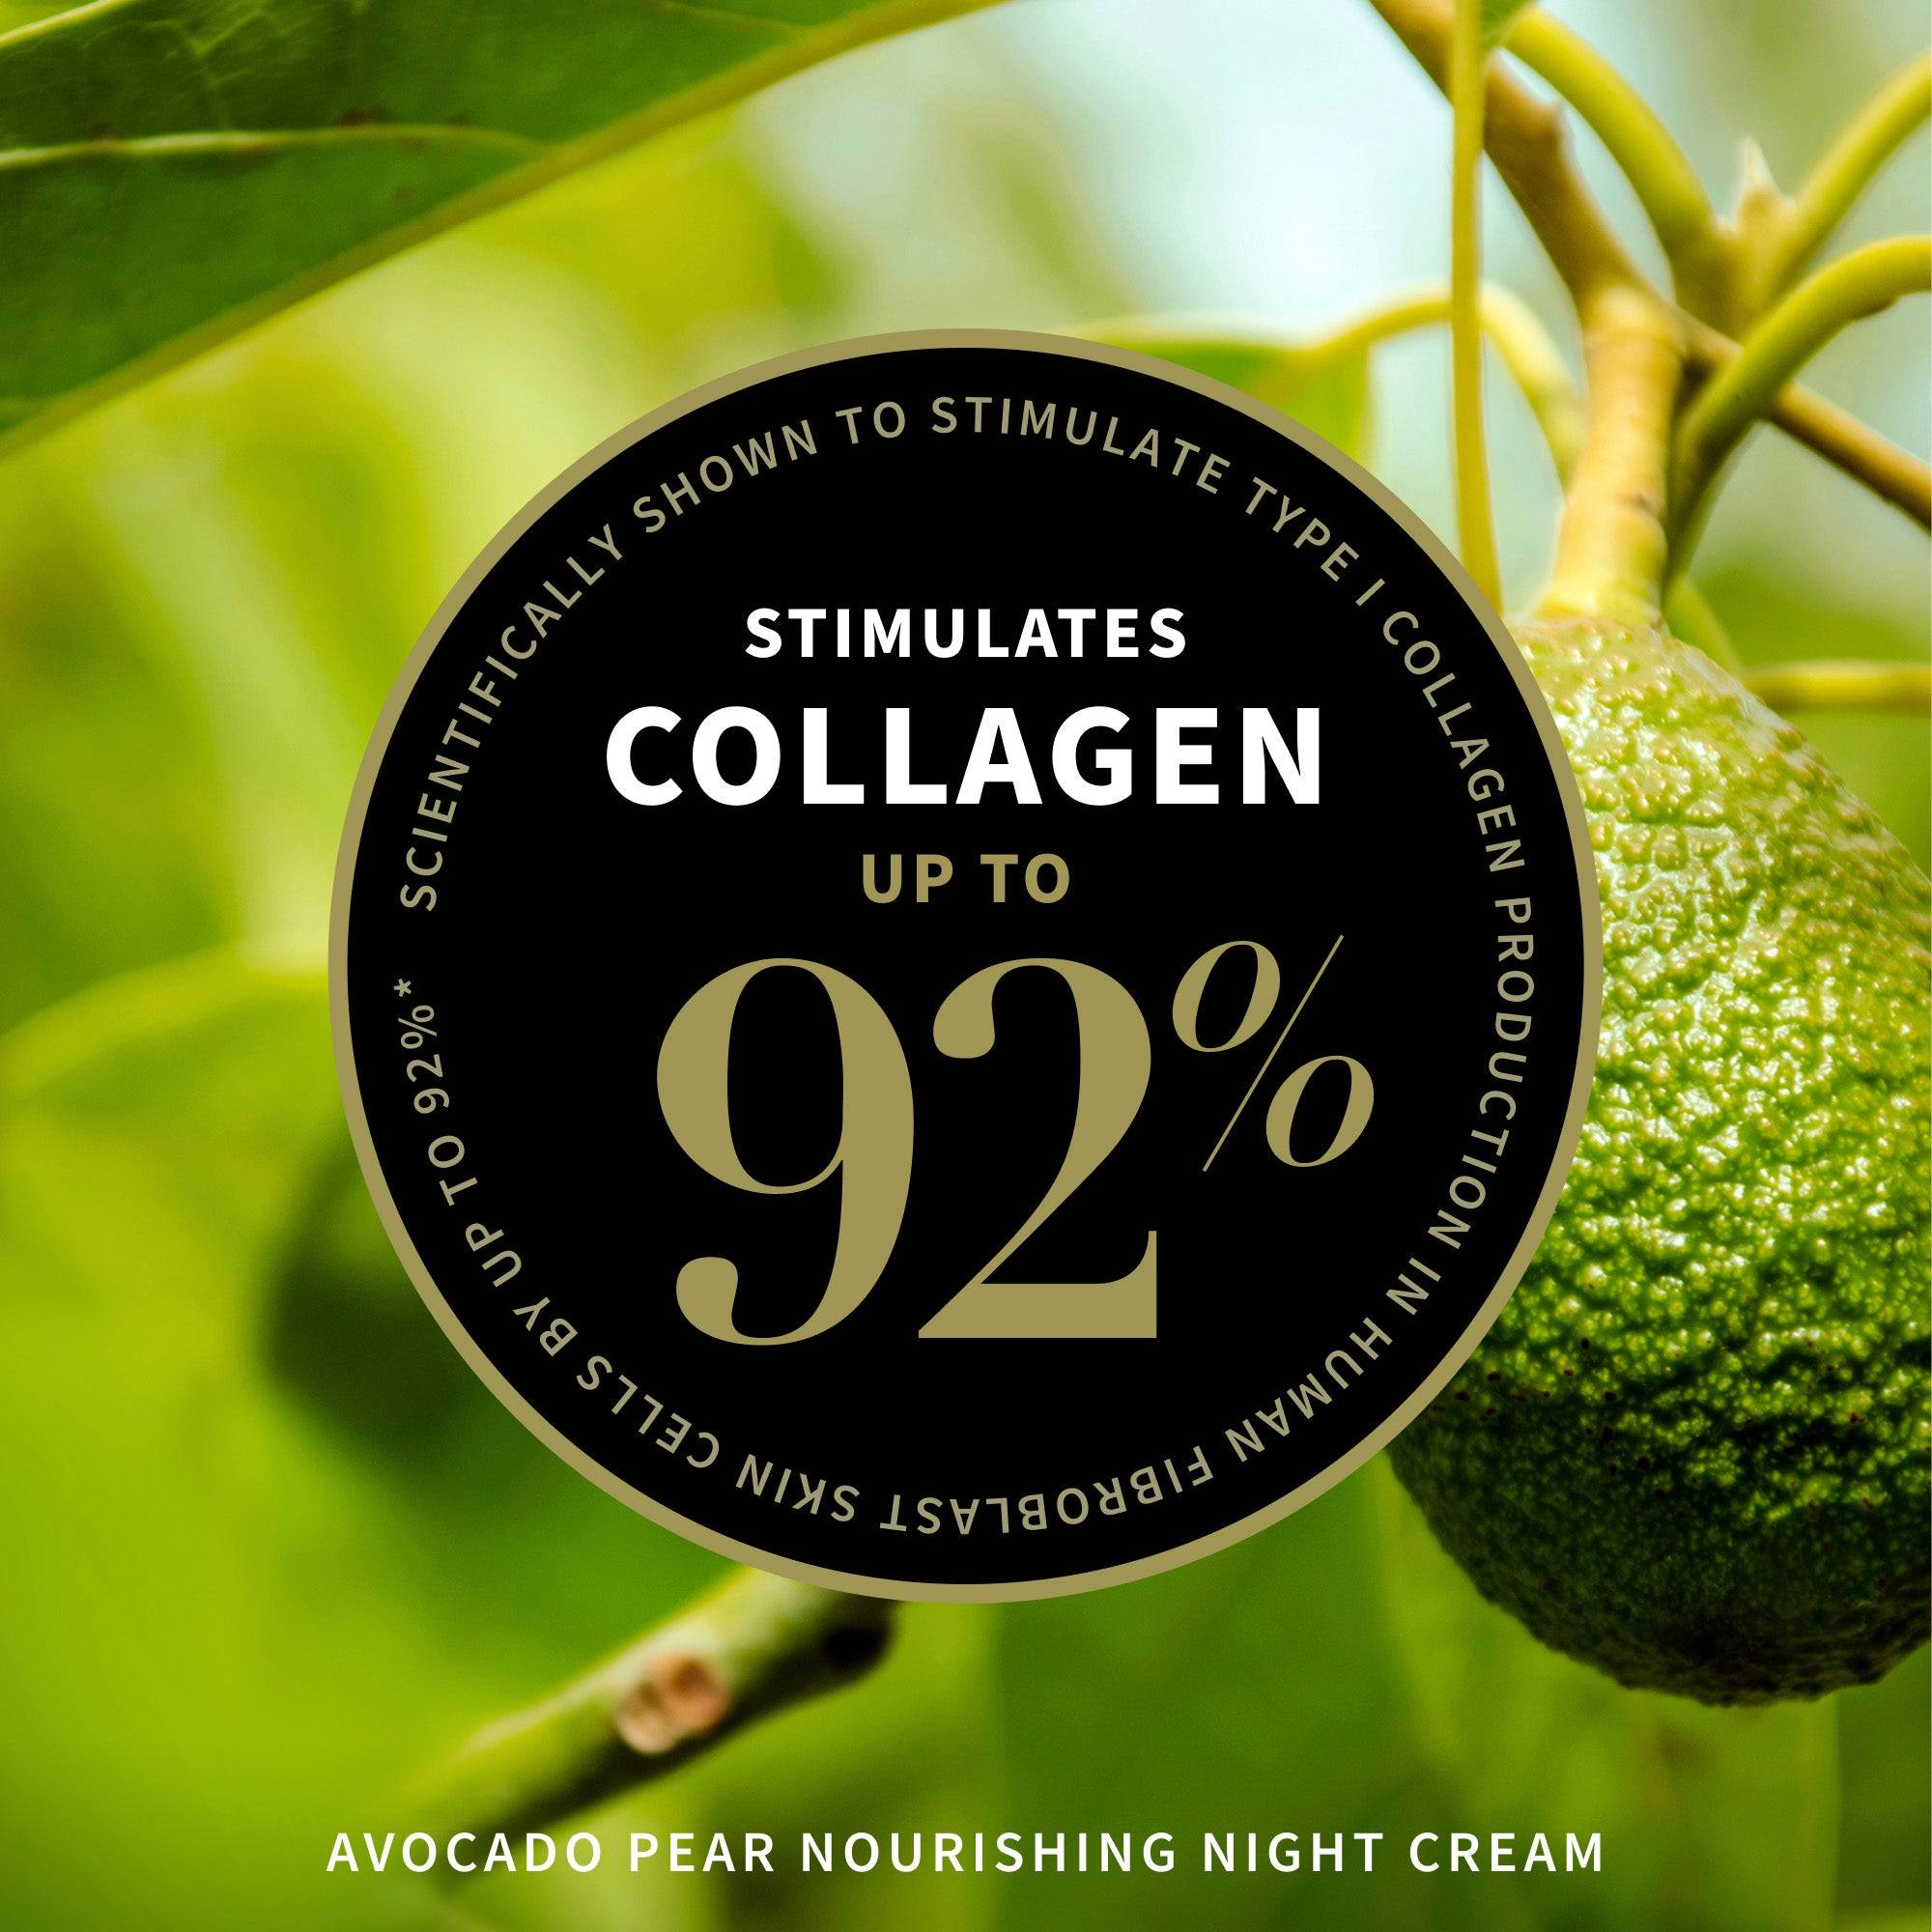 Stimulates collagen up to 92%